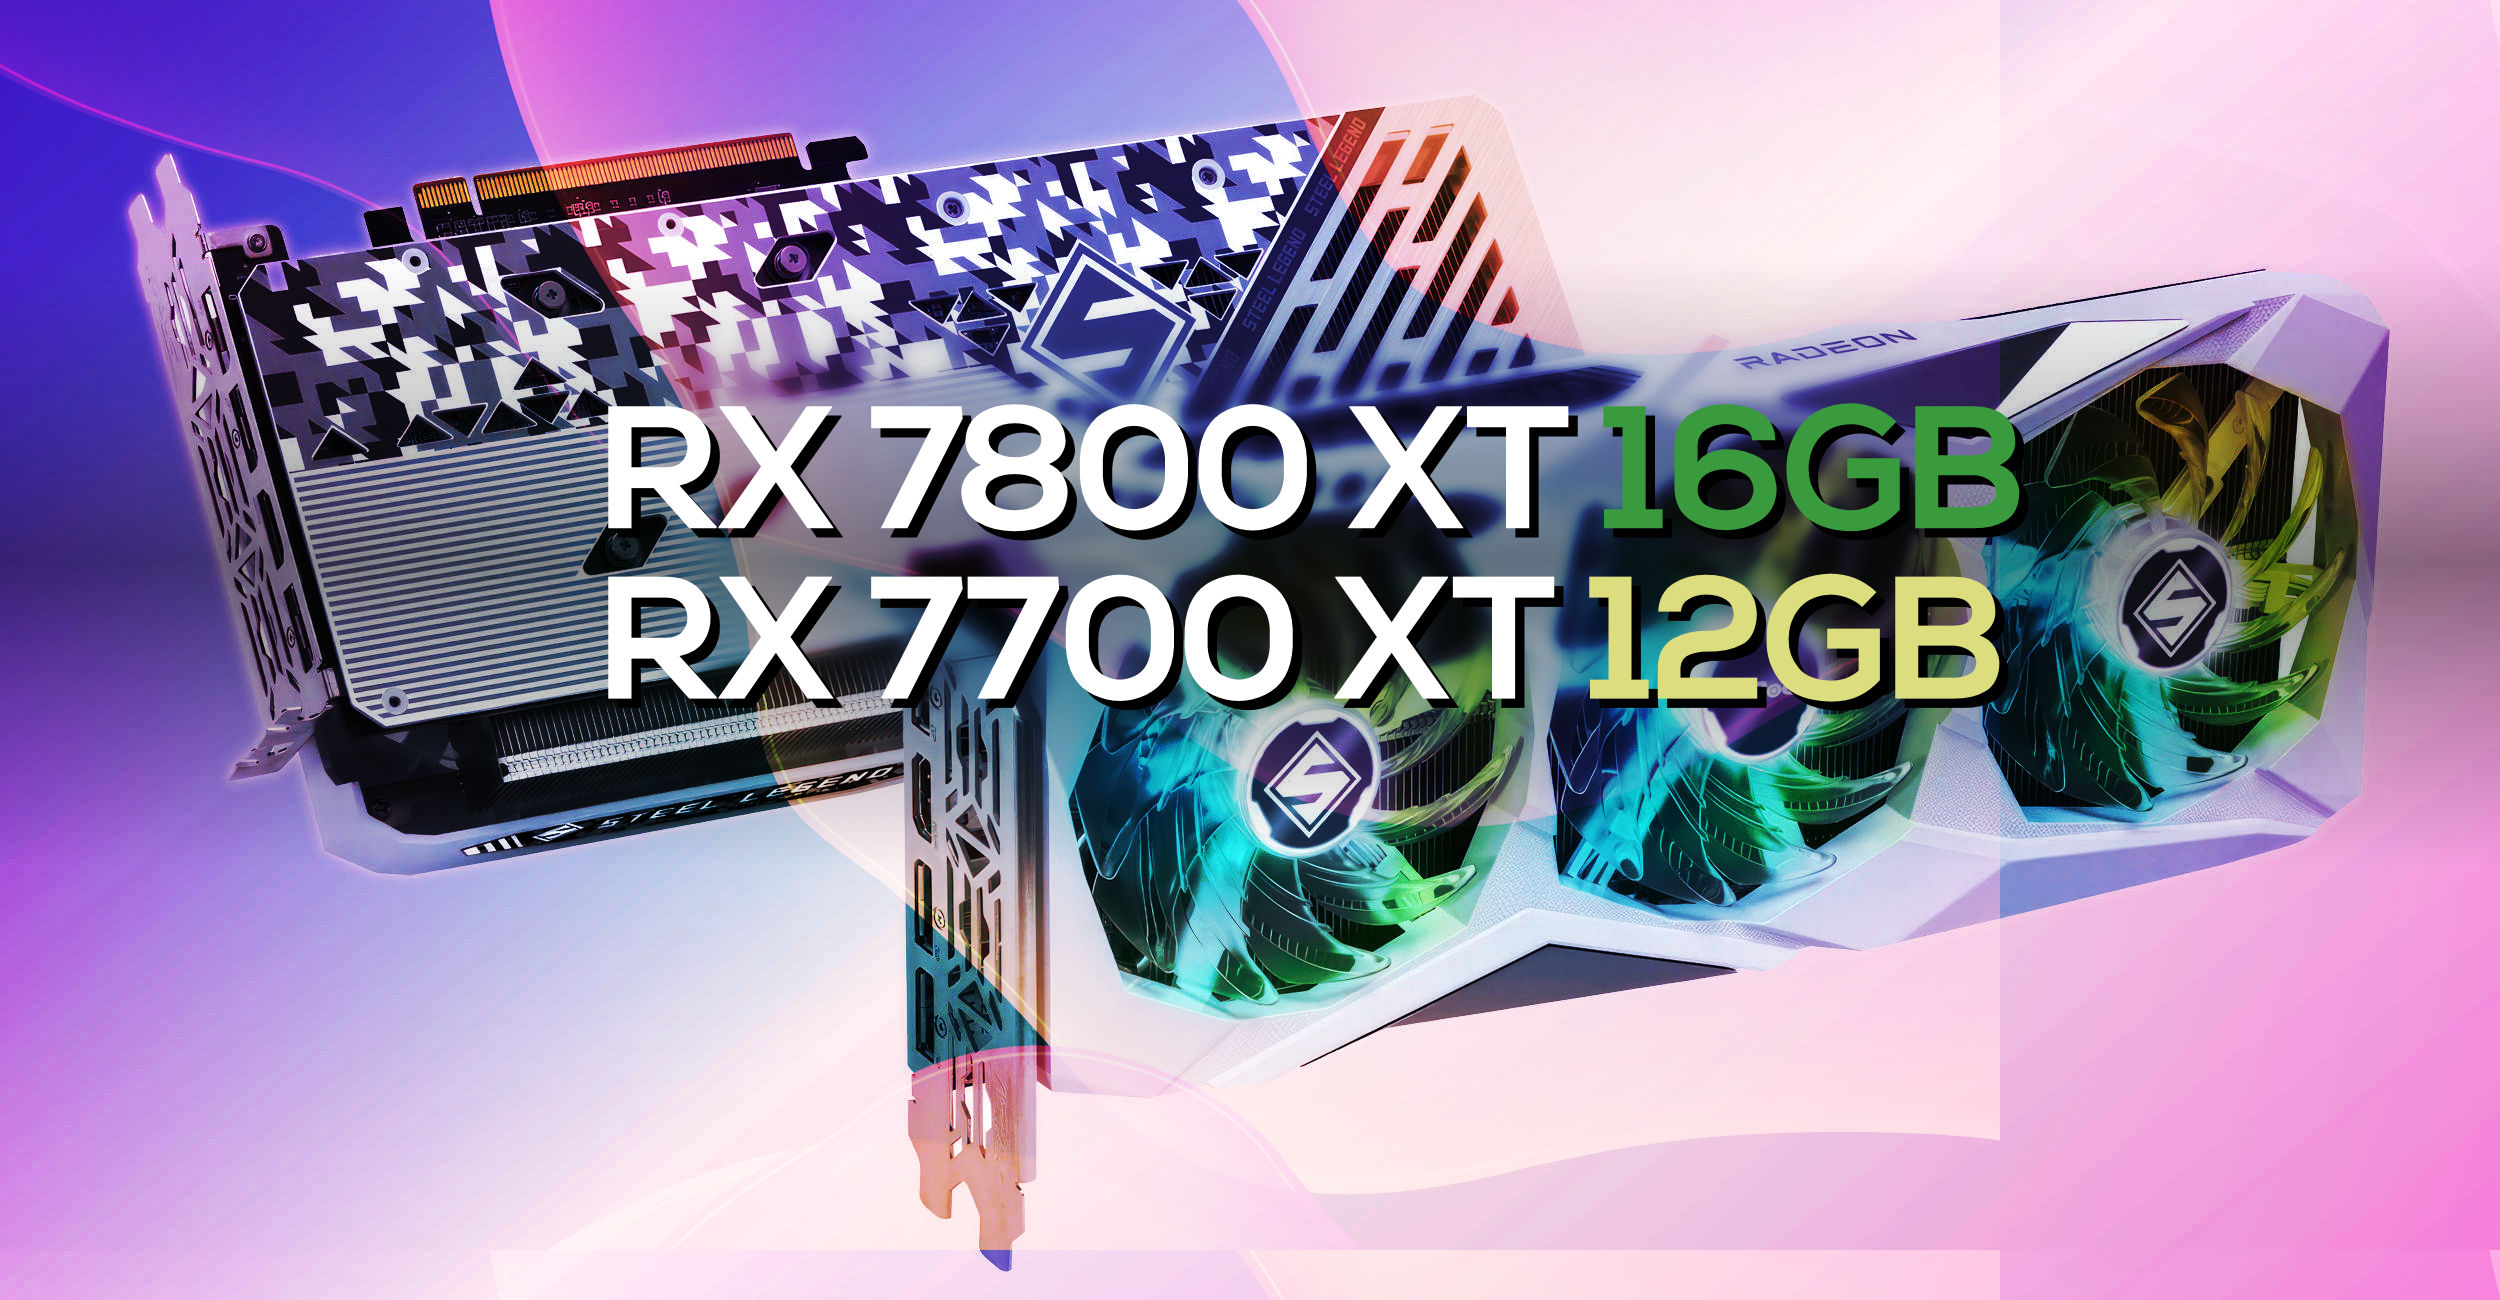 ASRock lists Radeon RX 7800XT 16GB and Radeon RX 7700XT 12GB